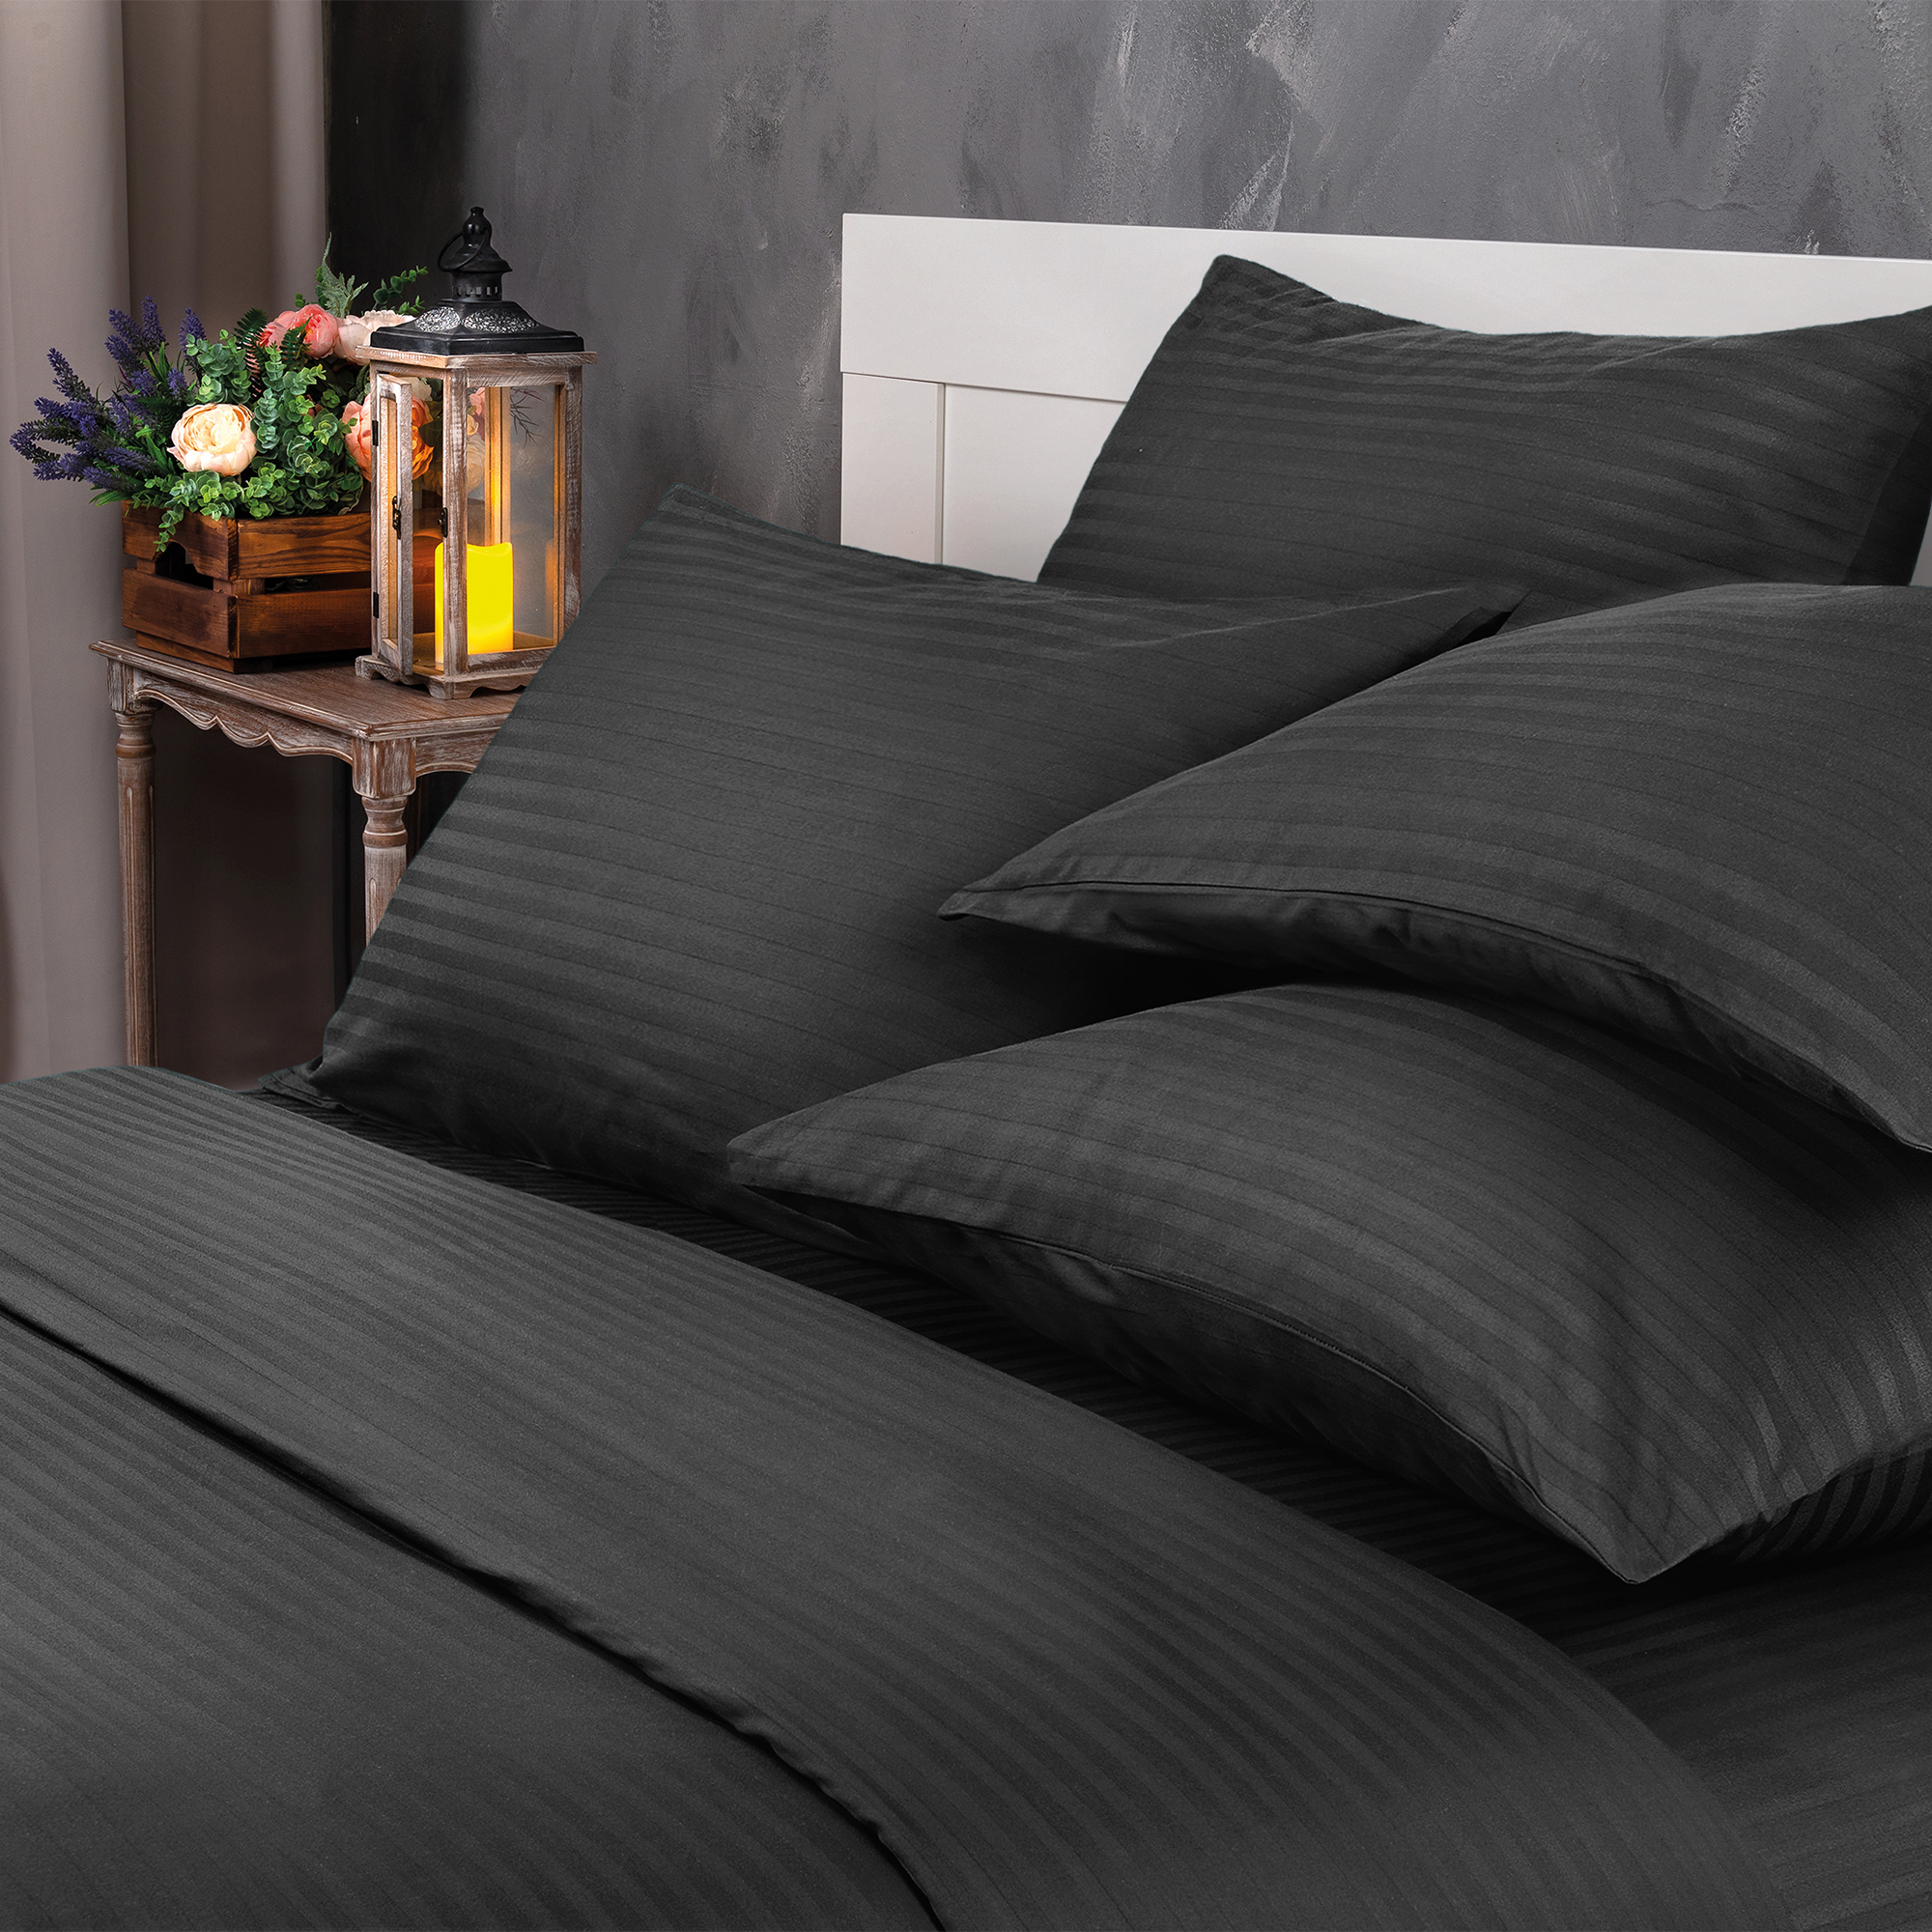 Комплект постельного белья Verossa 2.0СП Black страйп-сатин наволочки 50х70см 100% хлопок - фото 2